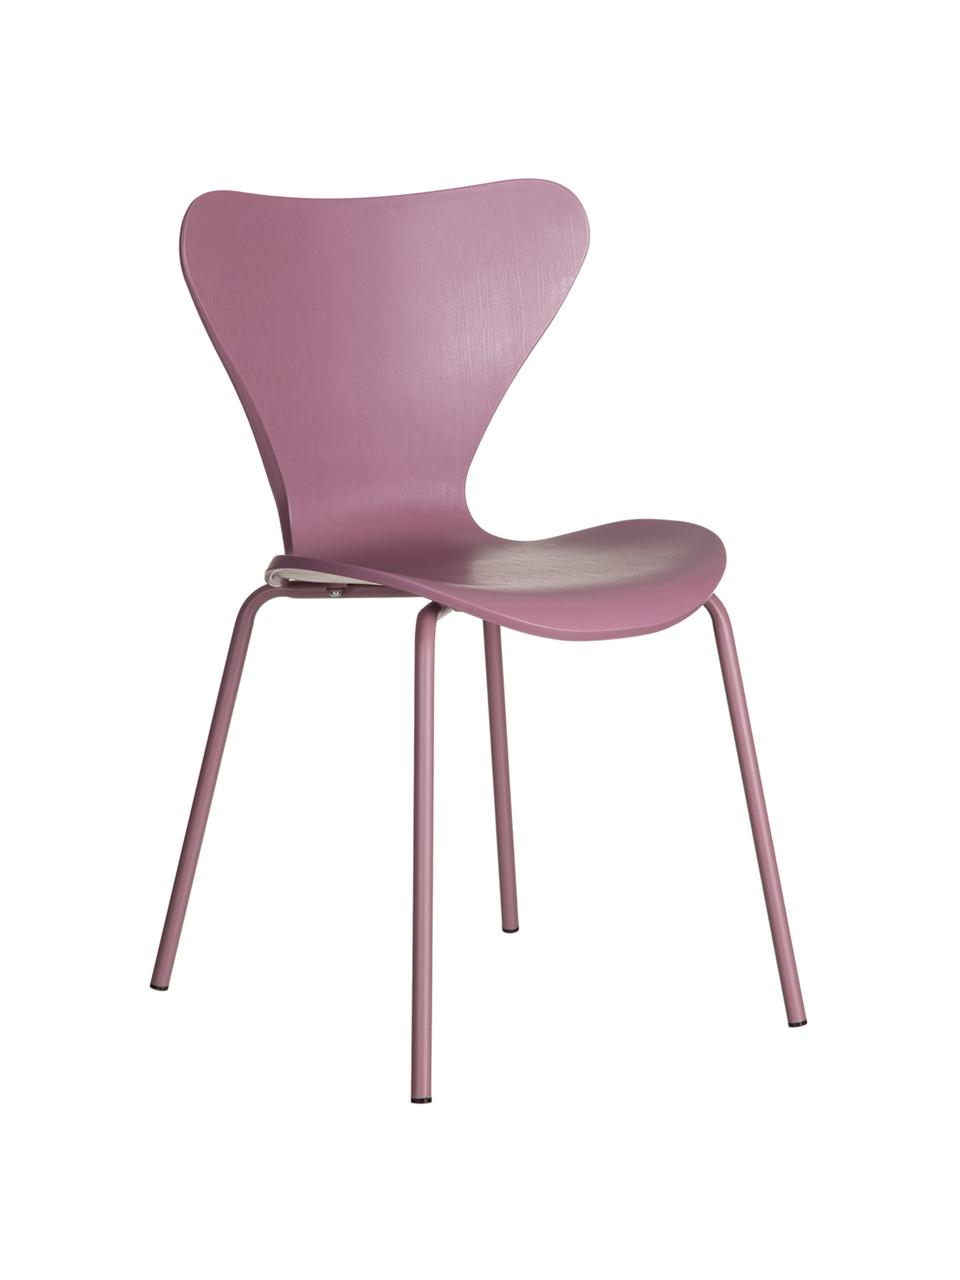 Stapelbare Kunststoffstühle Pippi, 2 Stück, Sitzfläche: Polypropylen, Beine: Metall, beschichtet, Violett, B 47 x T 50 cm